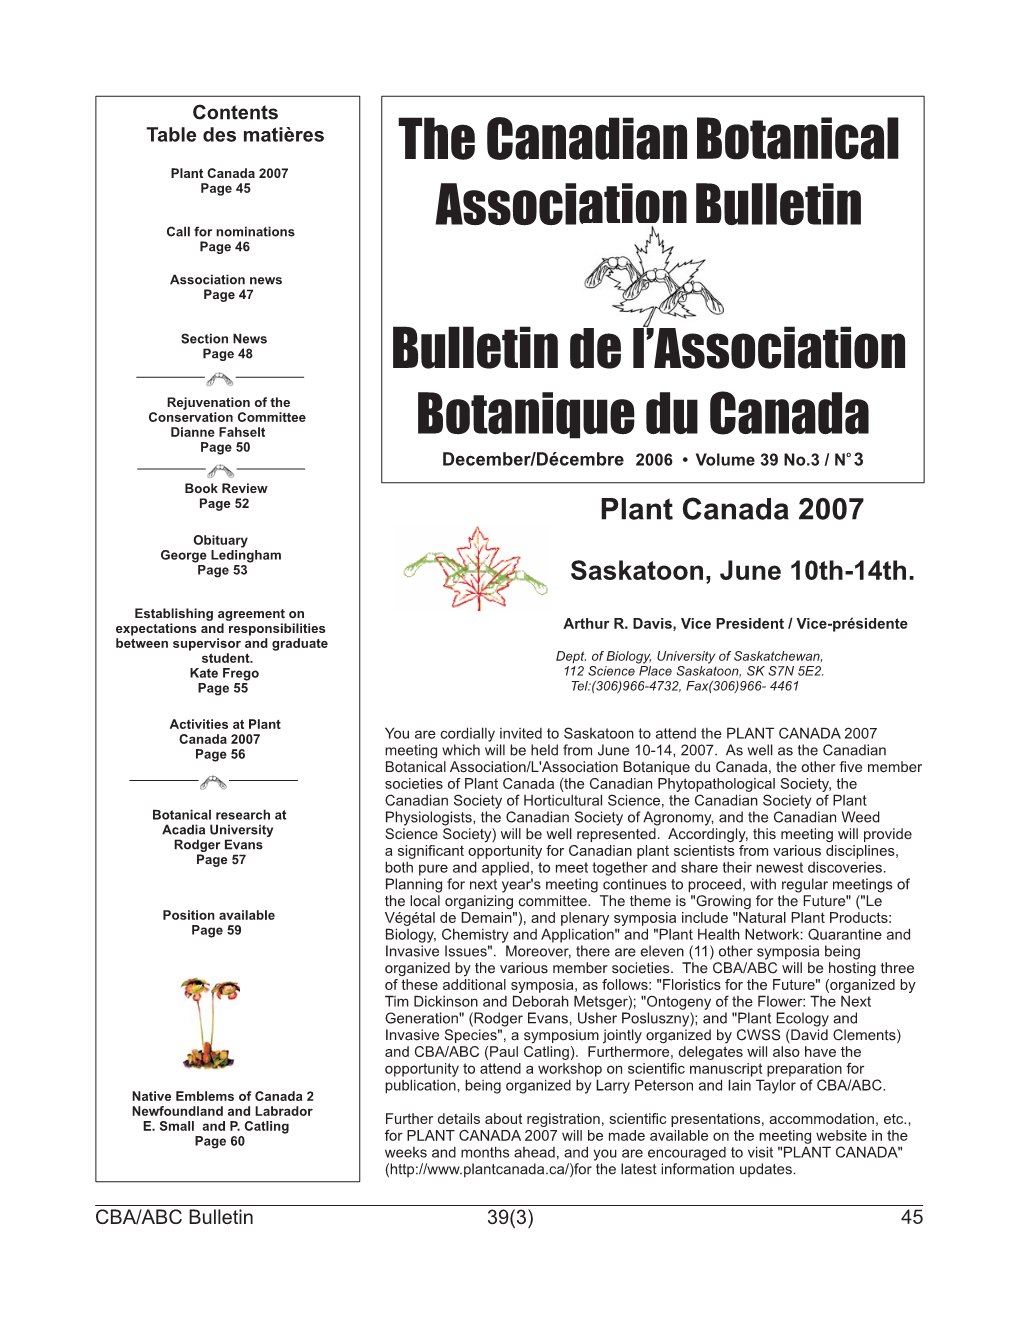 The Canadian Botanical Association Bulletin De L'association Botanique